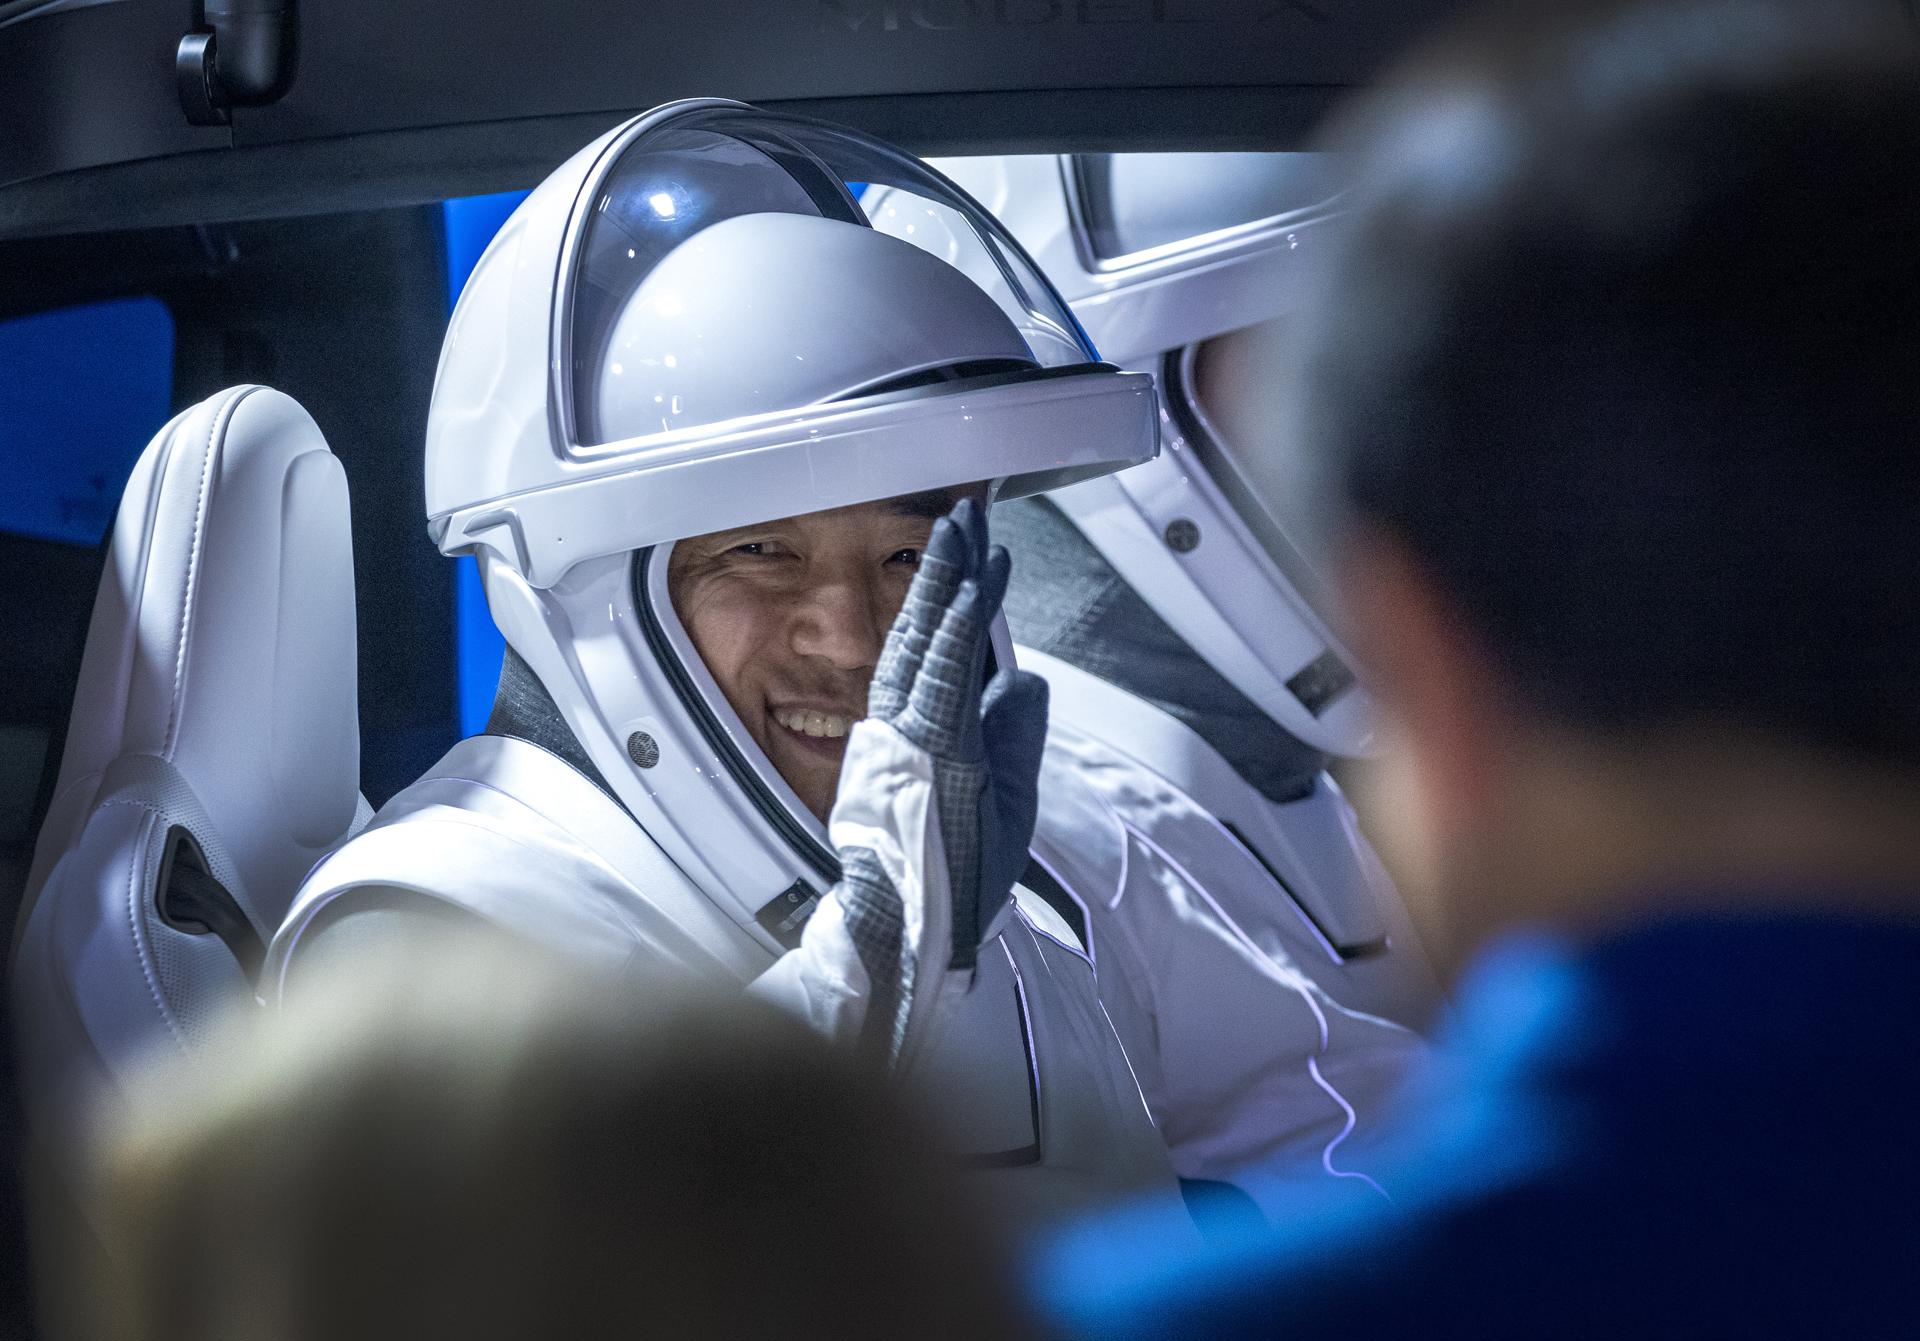 El astronauta Satoshi Furukawa, especialista de la misión JAXA (Agencia de Exploración Aeroespacial de Japón) y uno de los miembros de la Tripulación 7 de la NASA, gesticula durante la salida de la tripulación del Edificio de Operaciones y Revisión Neil A. Armstrong del Complejo de Lanzamiento 39A en Titusville, Florida, EE.UU., el 26 de agosto de 2023. EFE/CRISTOBAL HERRERA-ULASHKEVICH